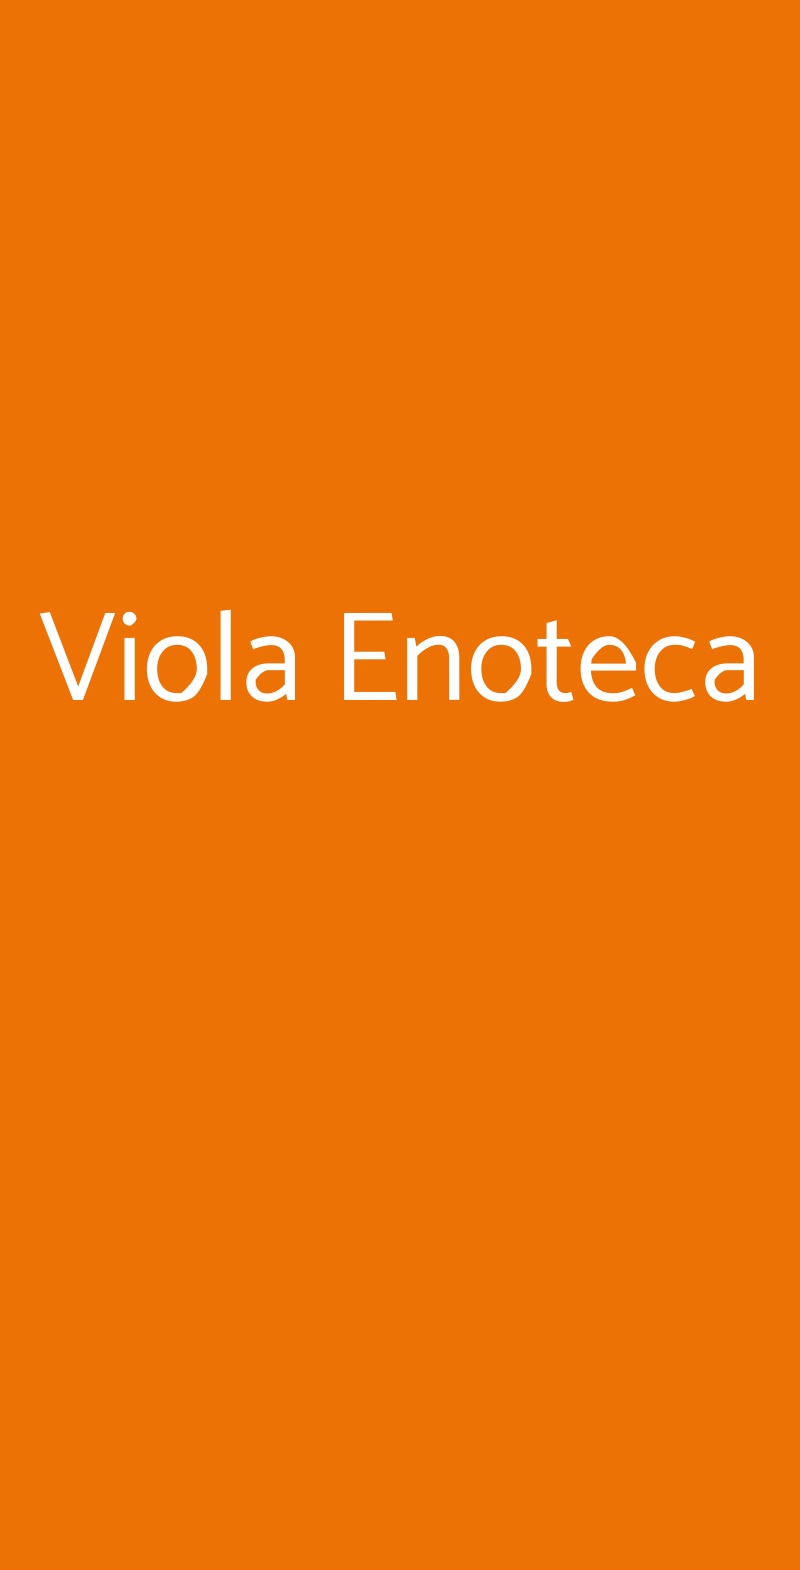 Viola Enoteca Milano menù 1 pagina